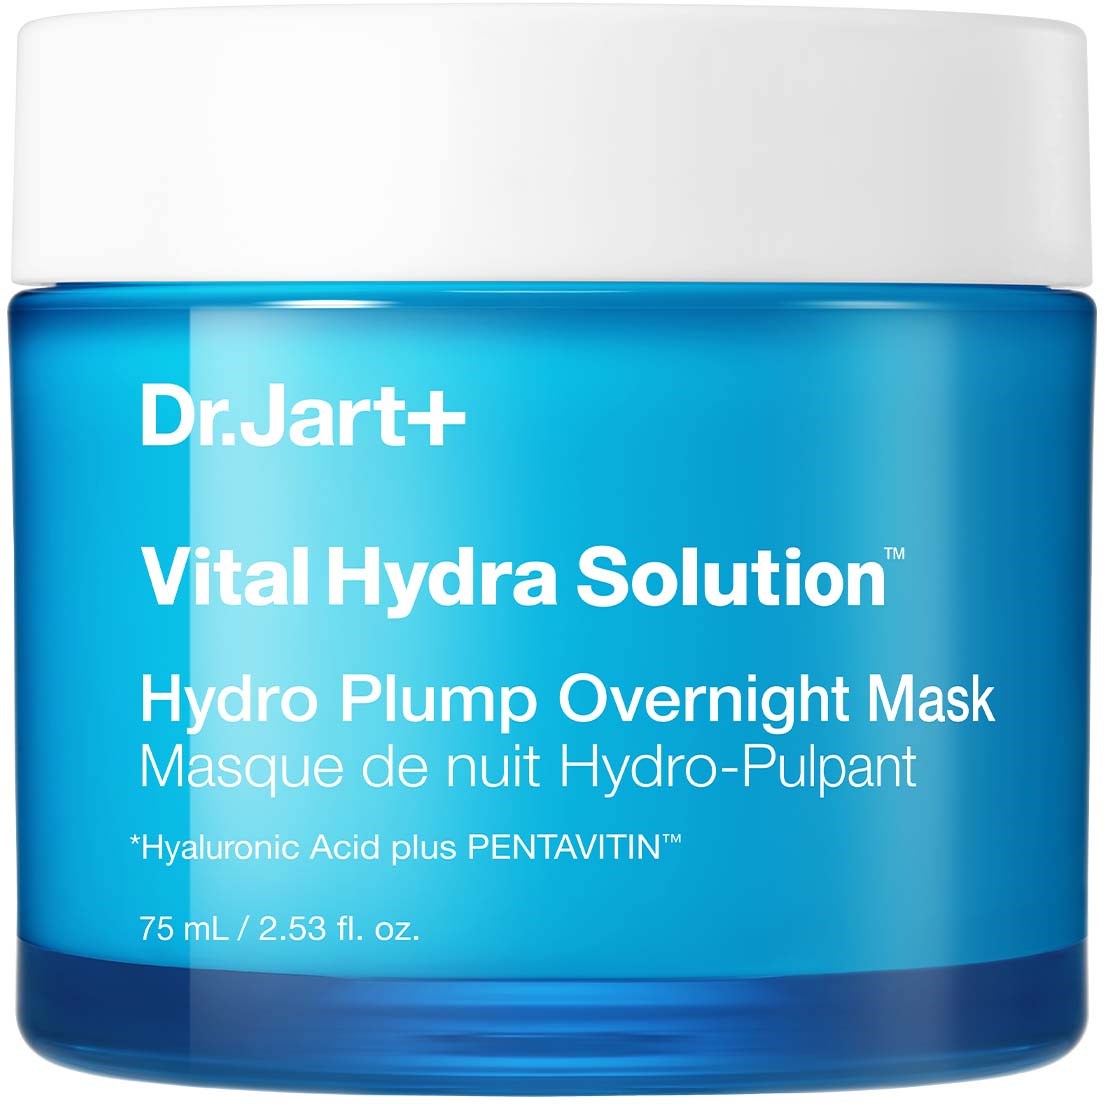 Bilde av Dr.jart+ Vital Hydra Solution Hydro Plump Overnight Mask 75 Ml